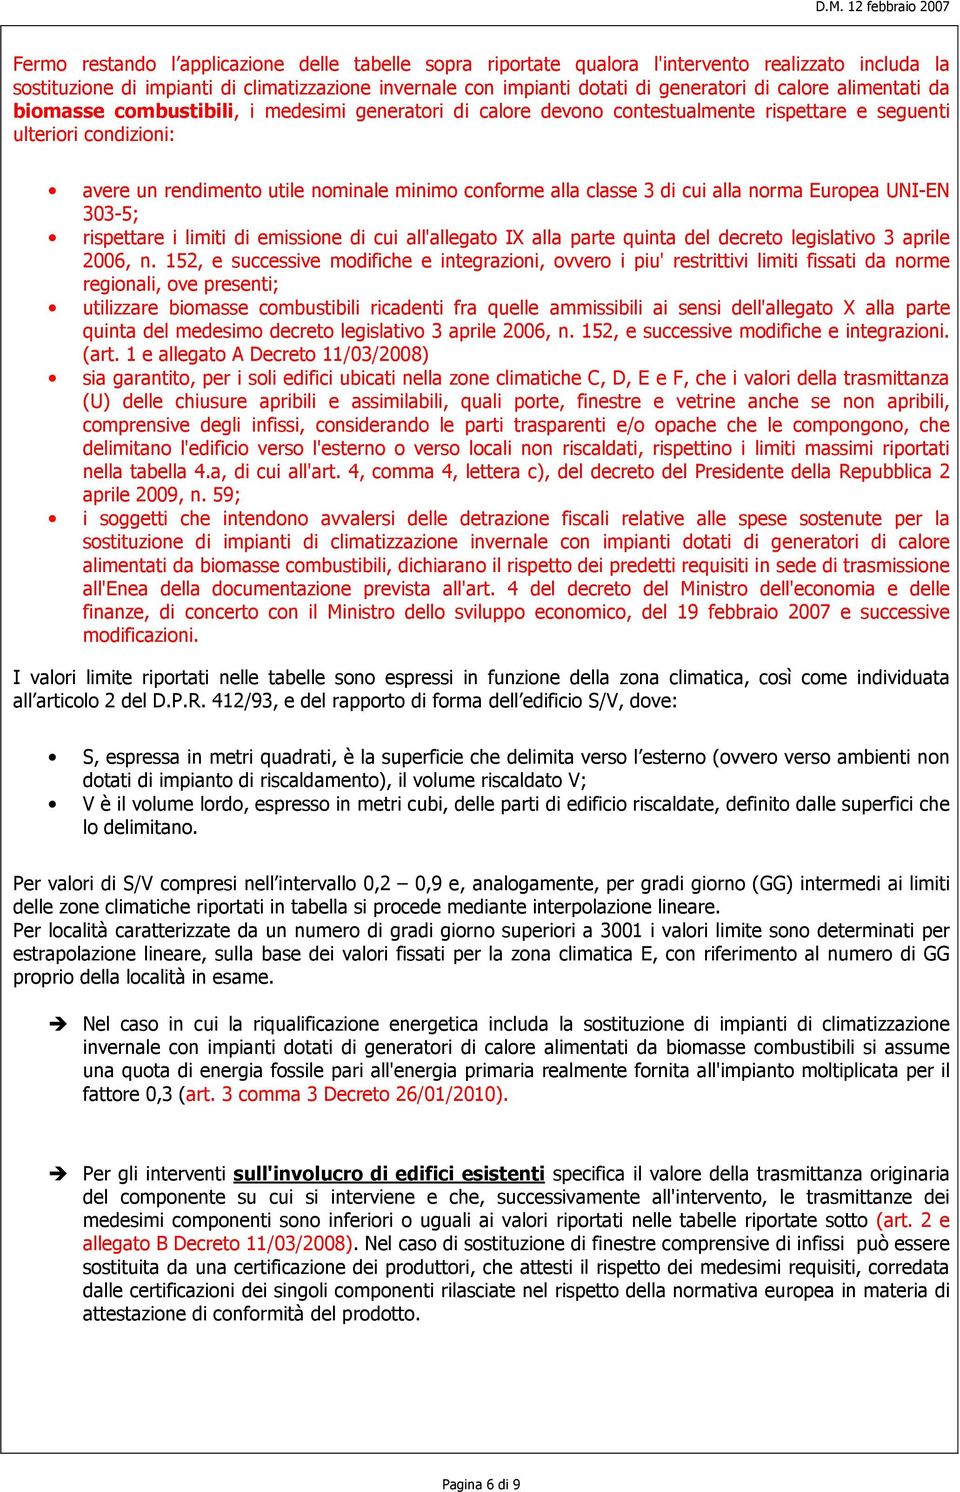 classe 3 di cui alla norma Europea UNI-EN 303-5; rispettare i limiti di emissione di cui all'allegato IX alla parte quinta del decreto legislativo 3 aprile 2006, n.